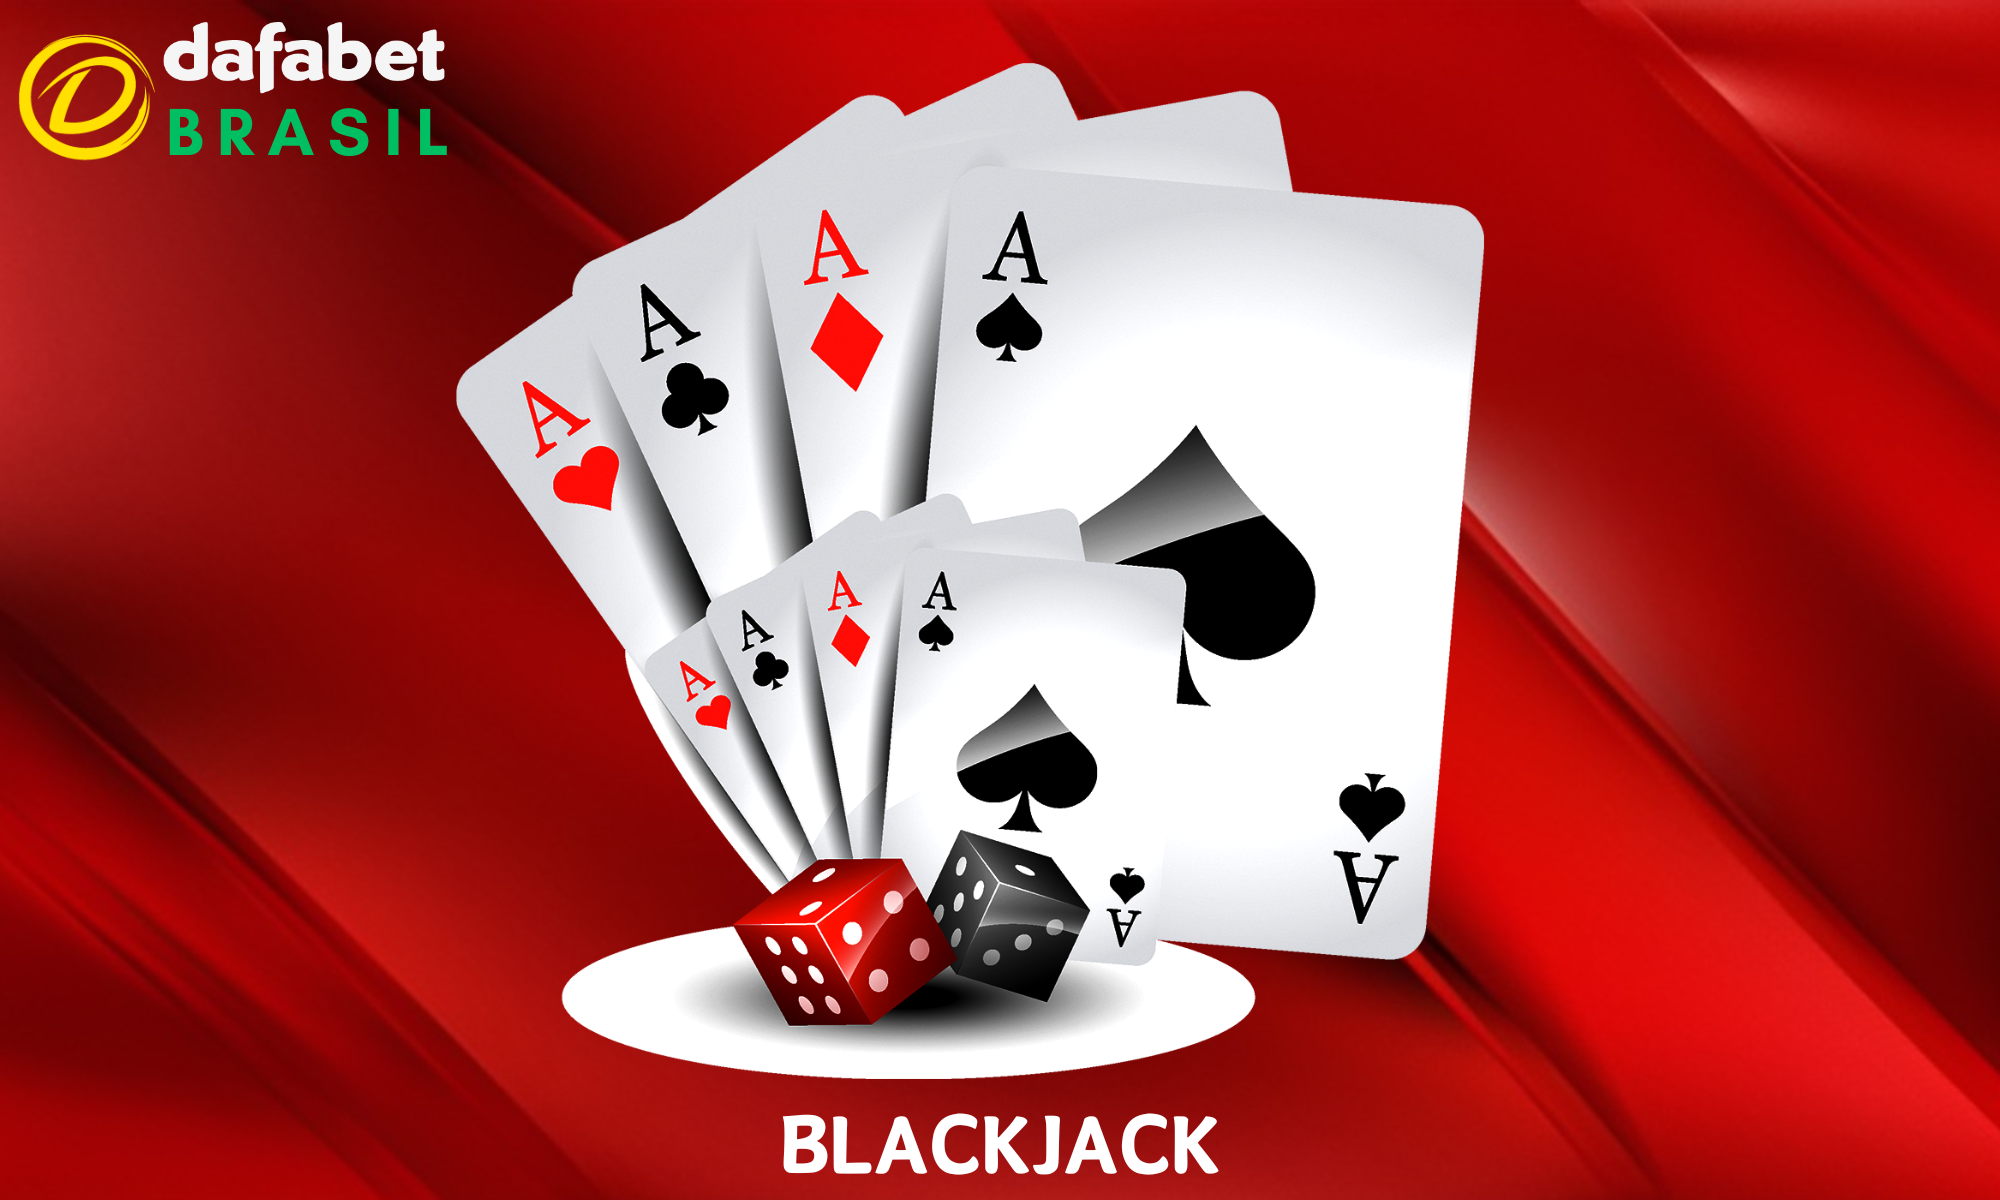 Blackjack Clássico, Big Blackjack e muito mais estão disponíveis na Dafabet